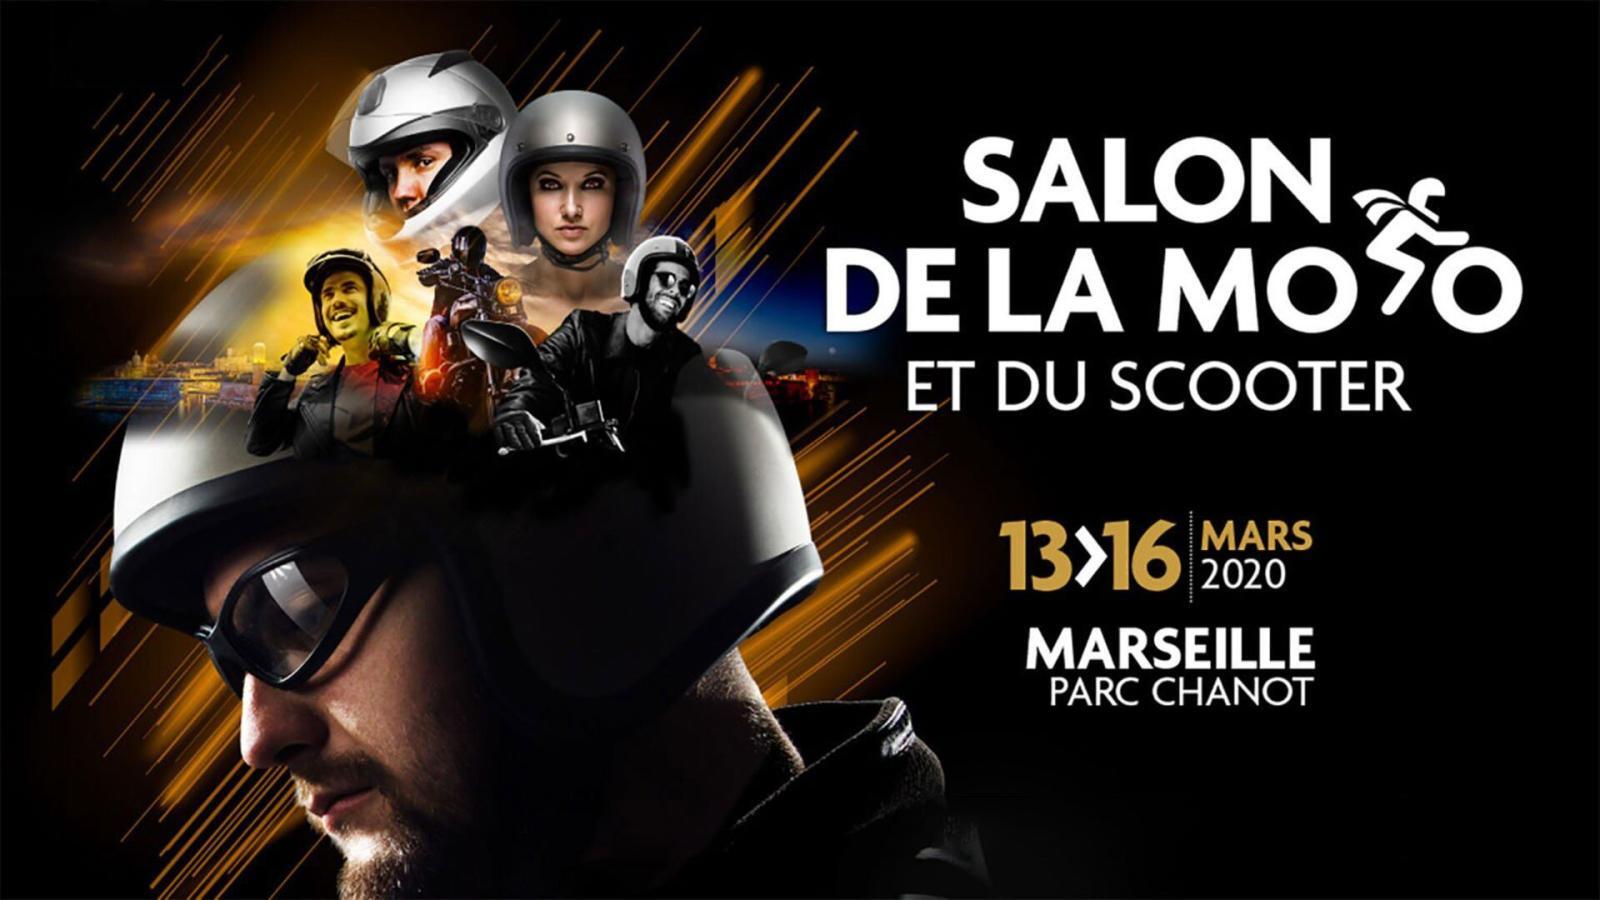 Salon de la moto Marseille 2020